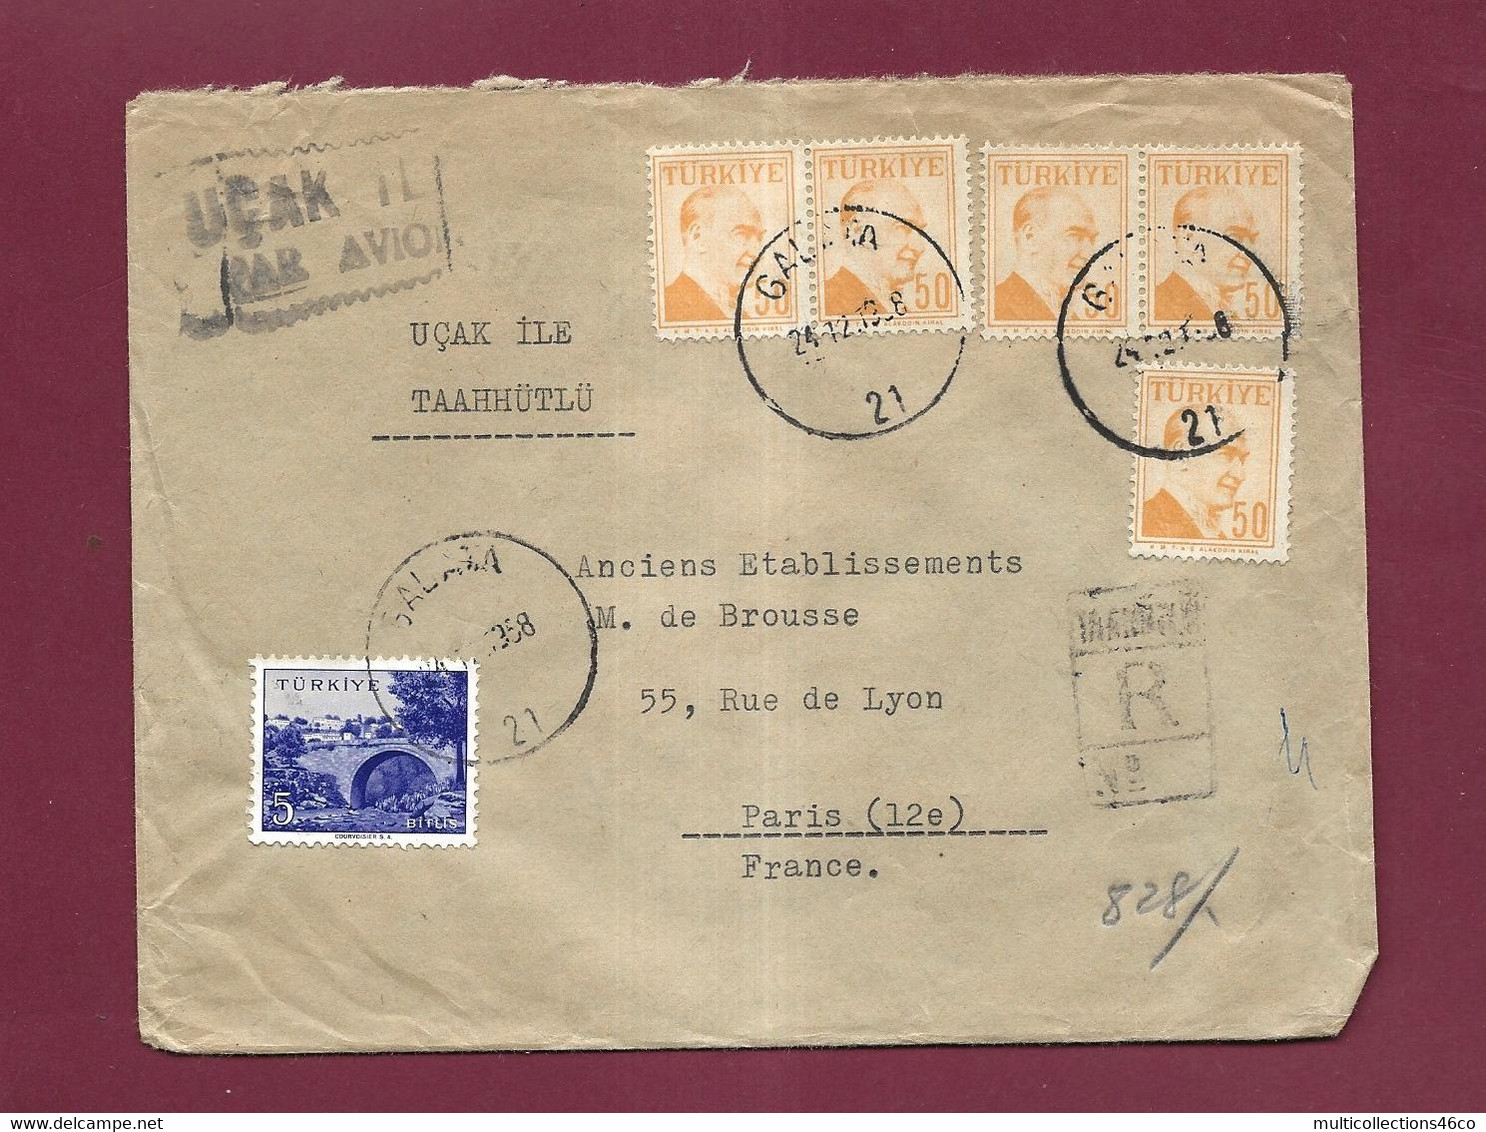 301121 - TURQUIE - Lettre Recommandée Affranchie Oblitérée GALATA  Pour La France  1958 - Lettres & Documents